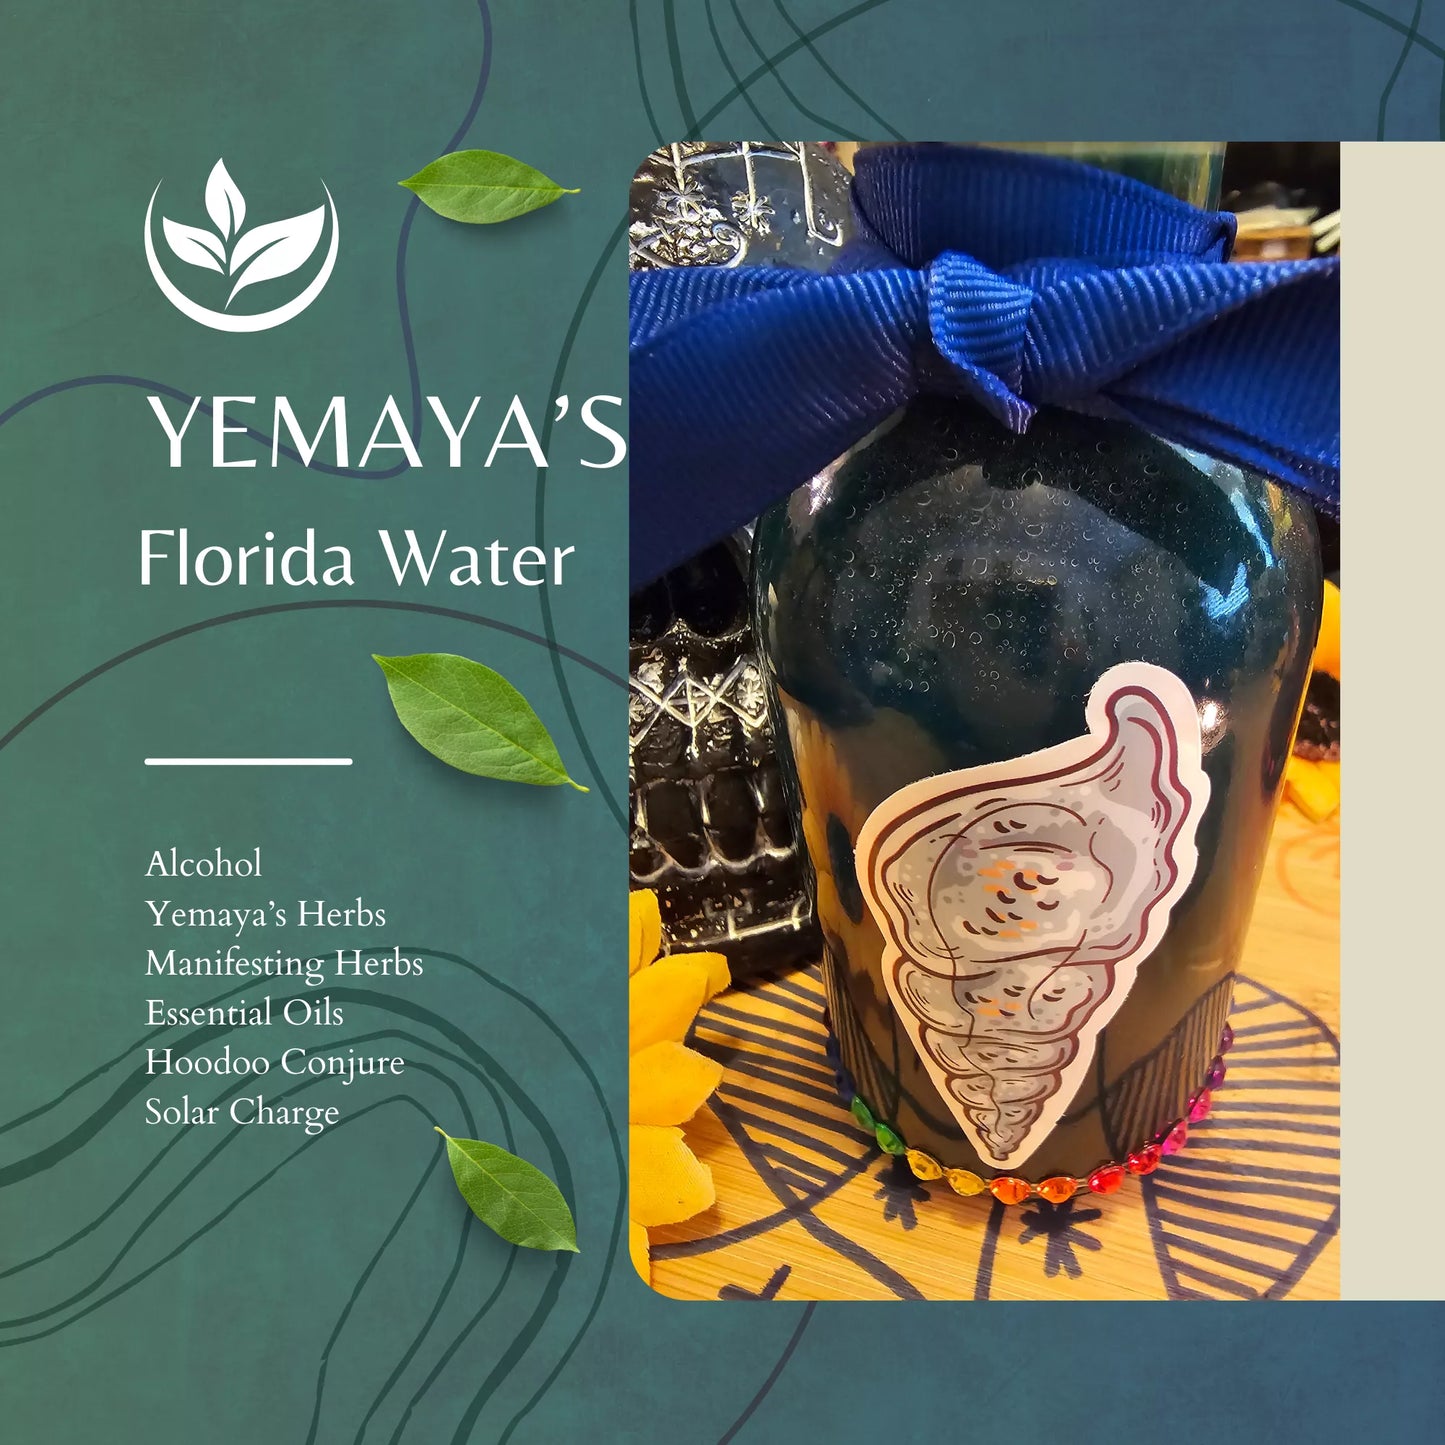 Yemaya's Florida Water